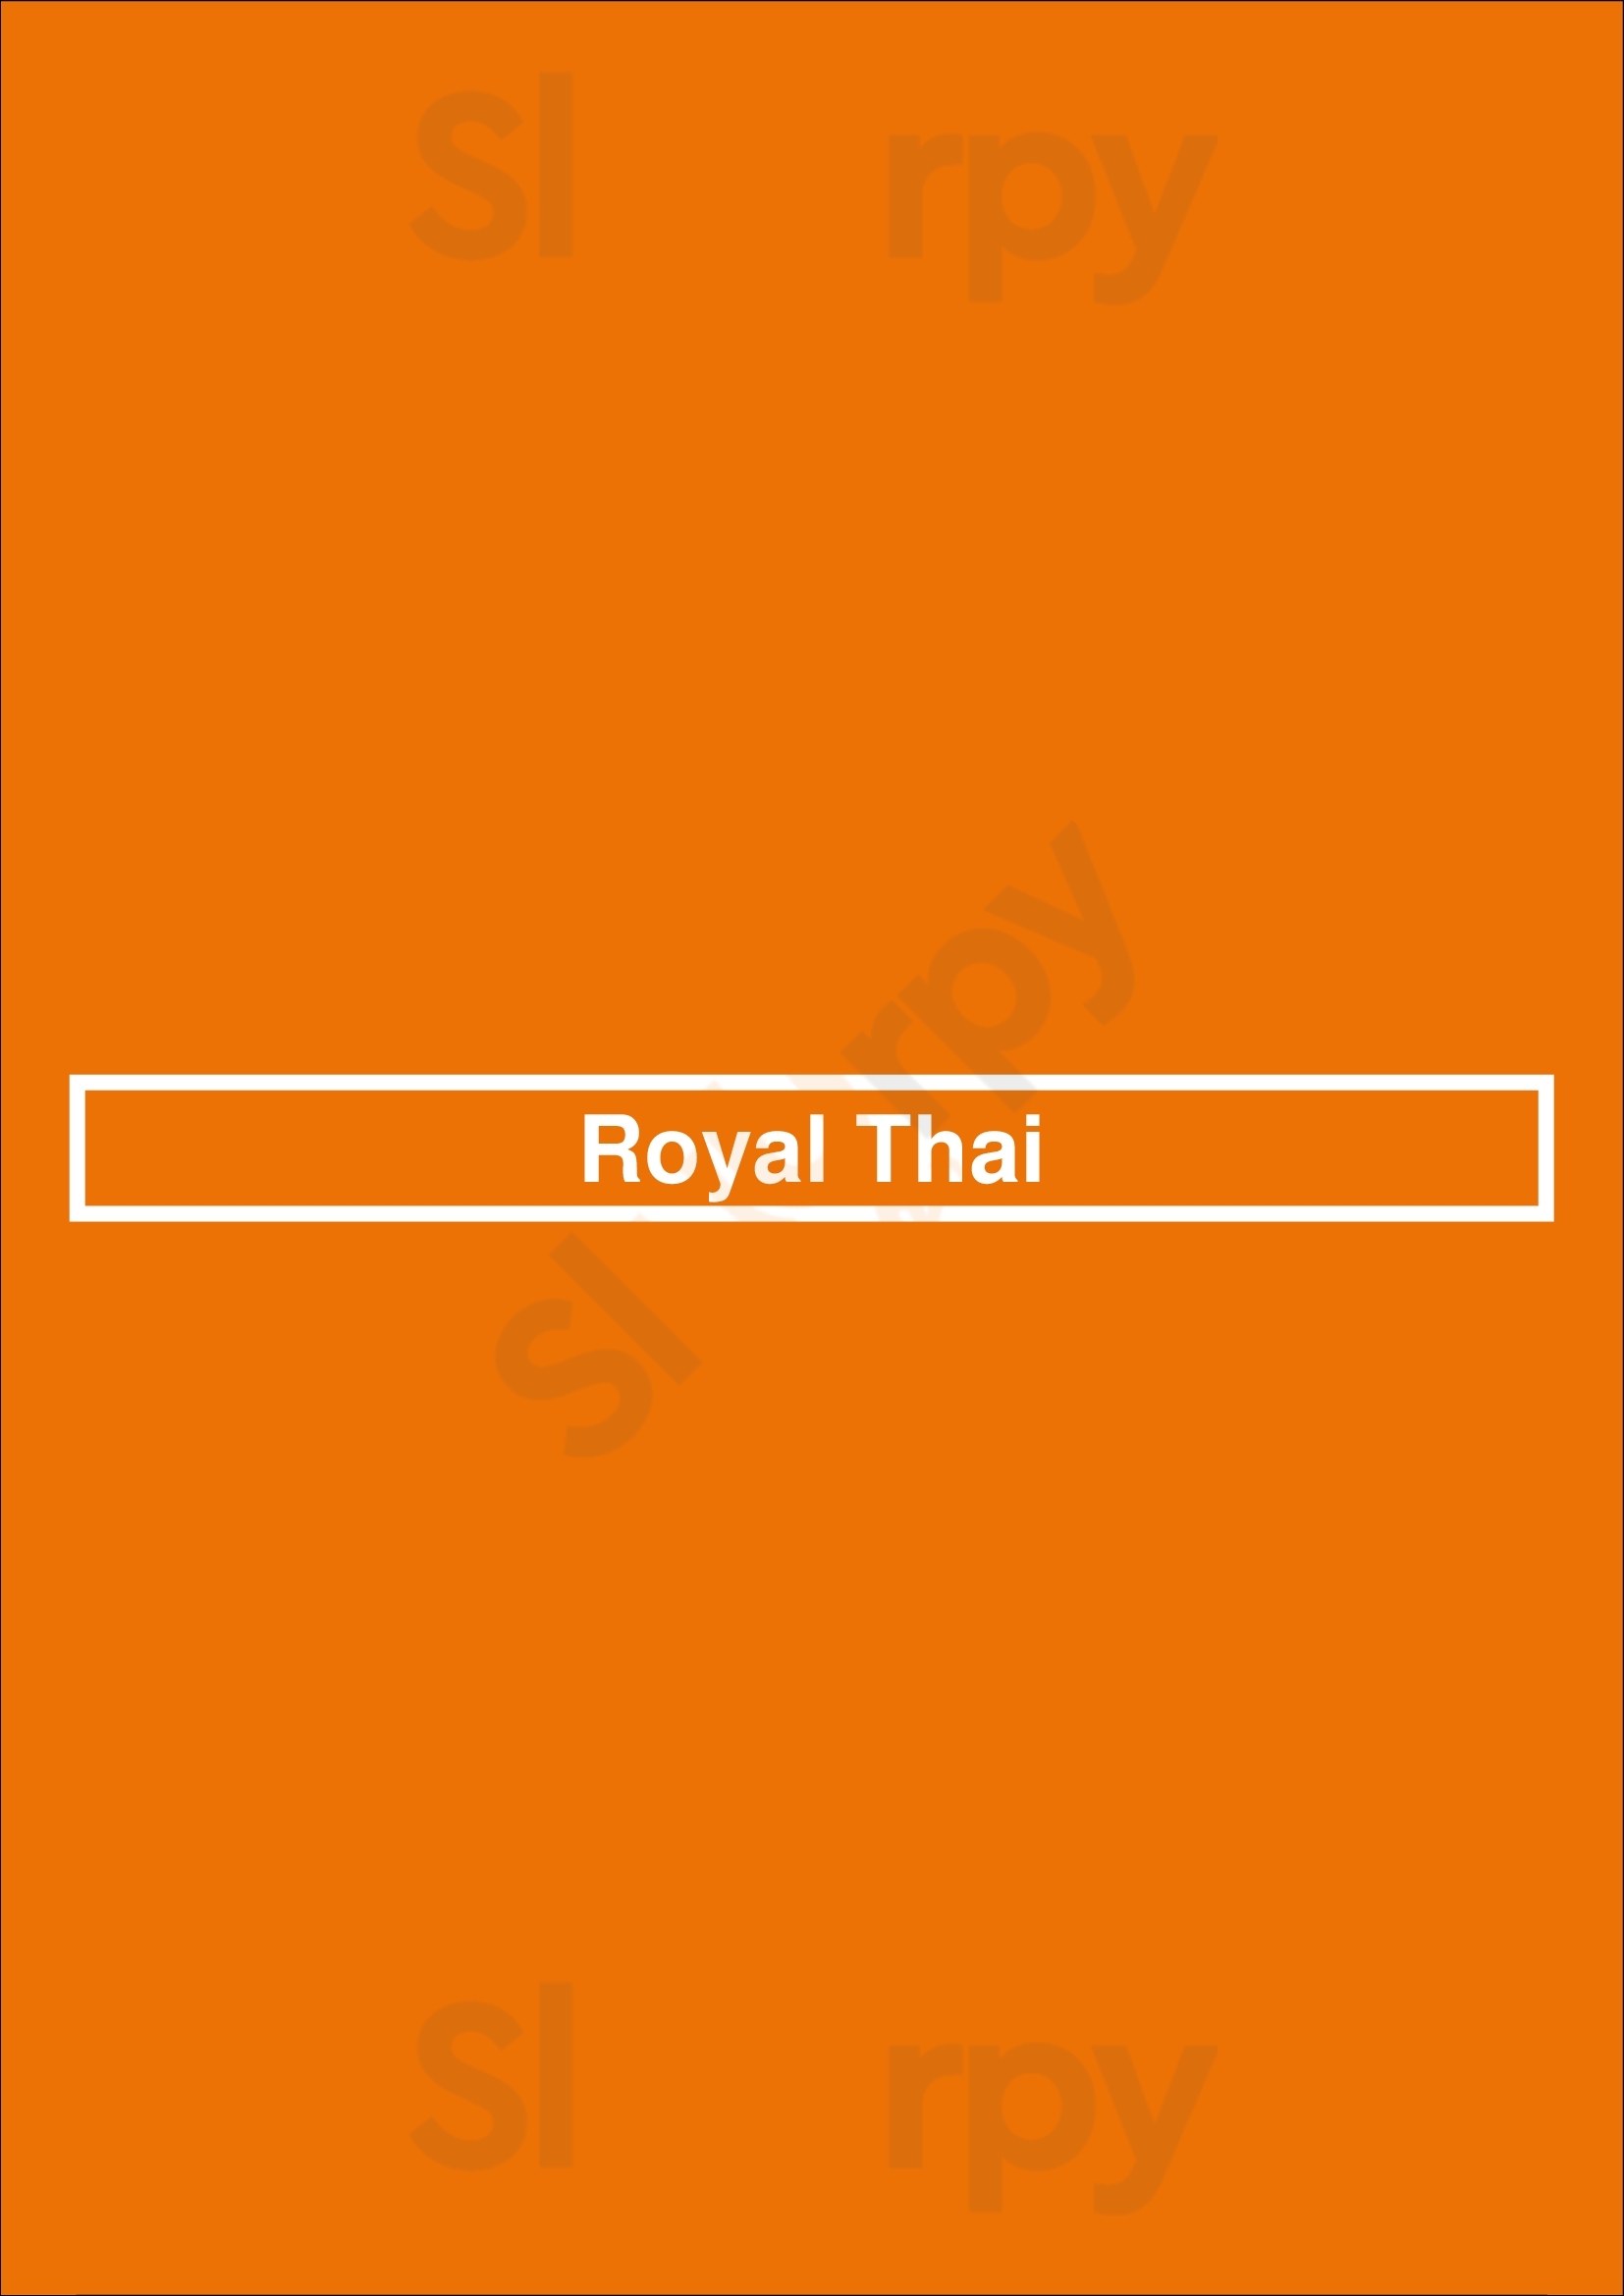 Royal Thai Saskatoon Menu - 1